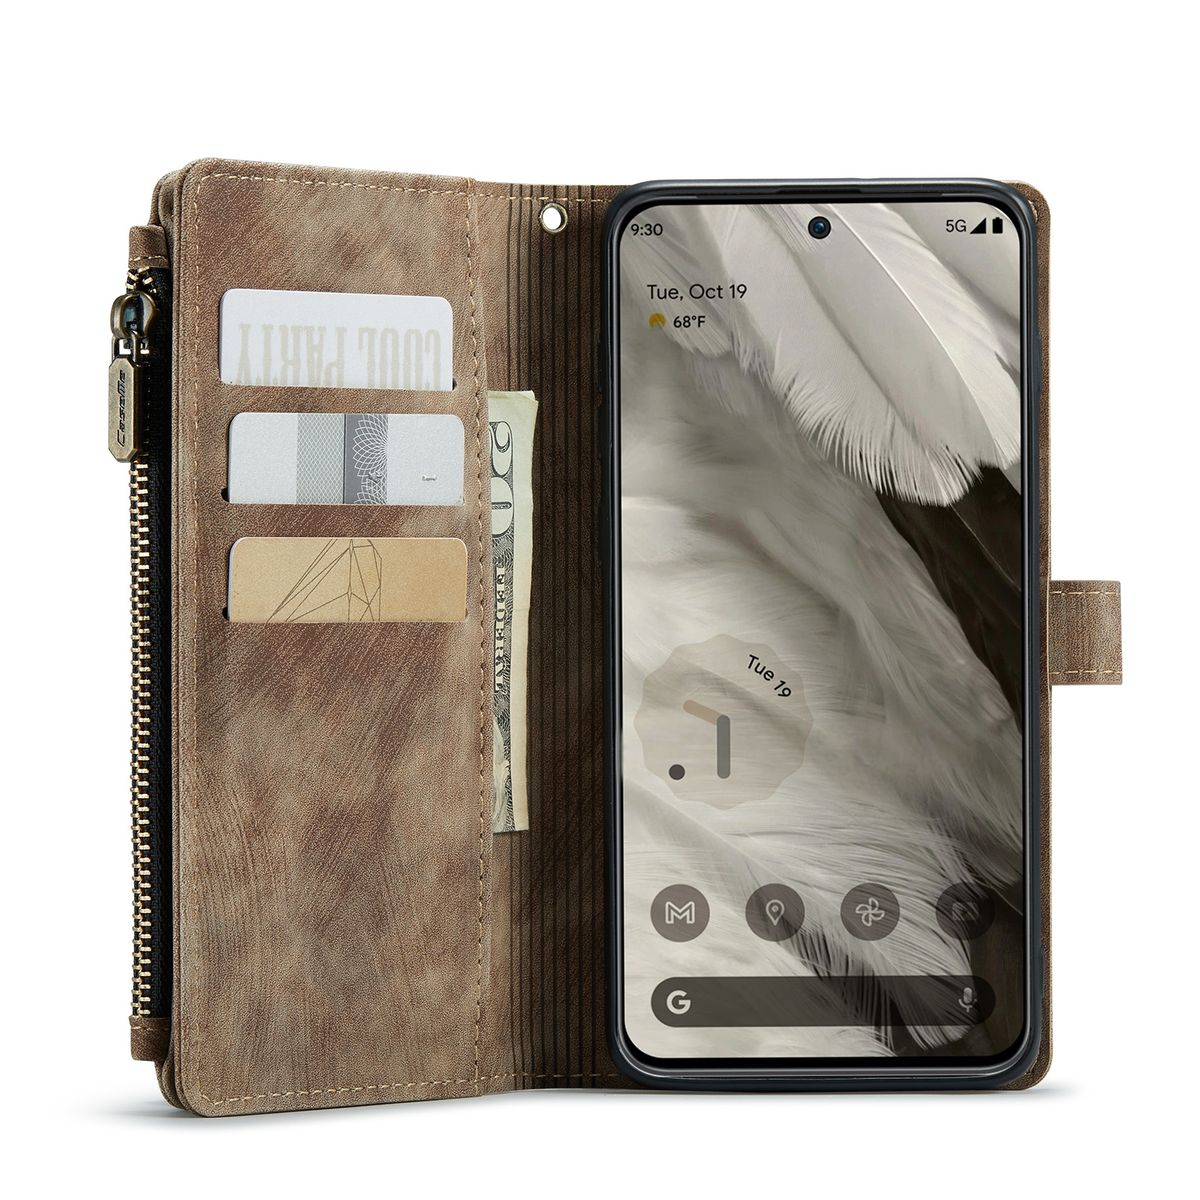 WIGENTO Multifunktion Tasche & Geldbörse, Pixel Braun Full Cover, Google, 8